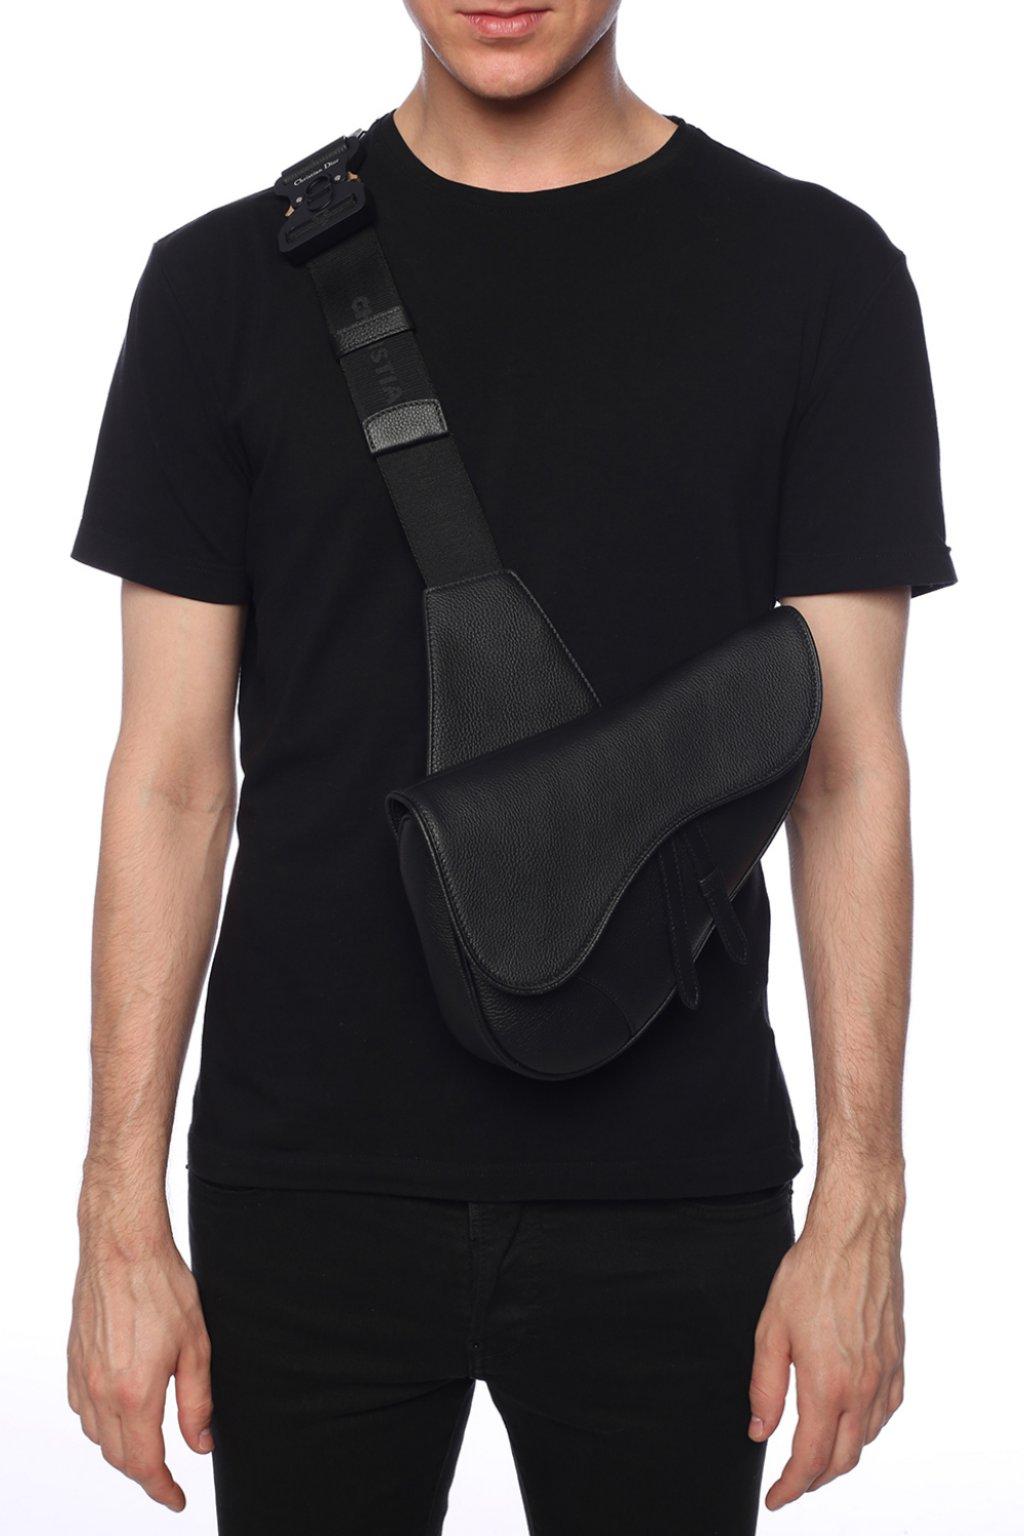 Dior 'saddle' Shoulder Bag Black for Men